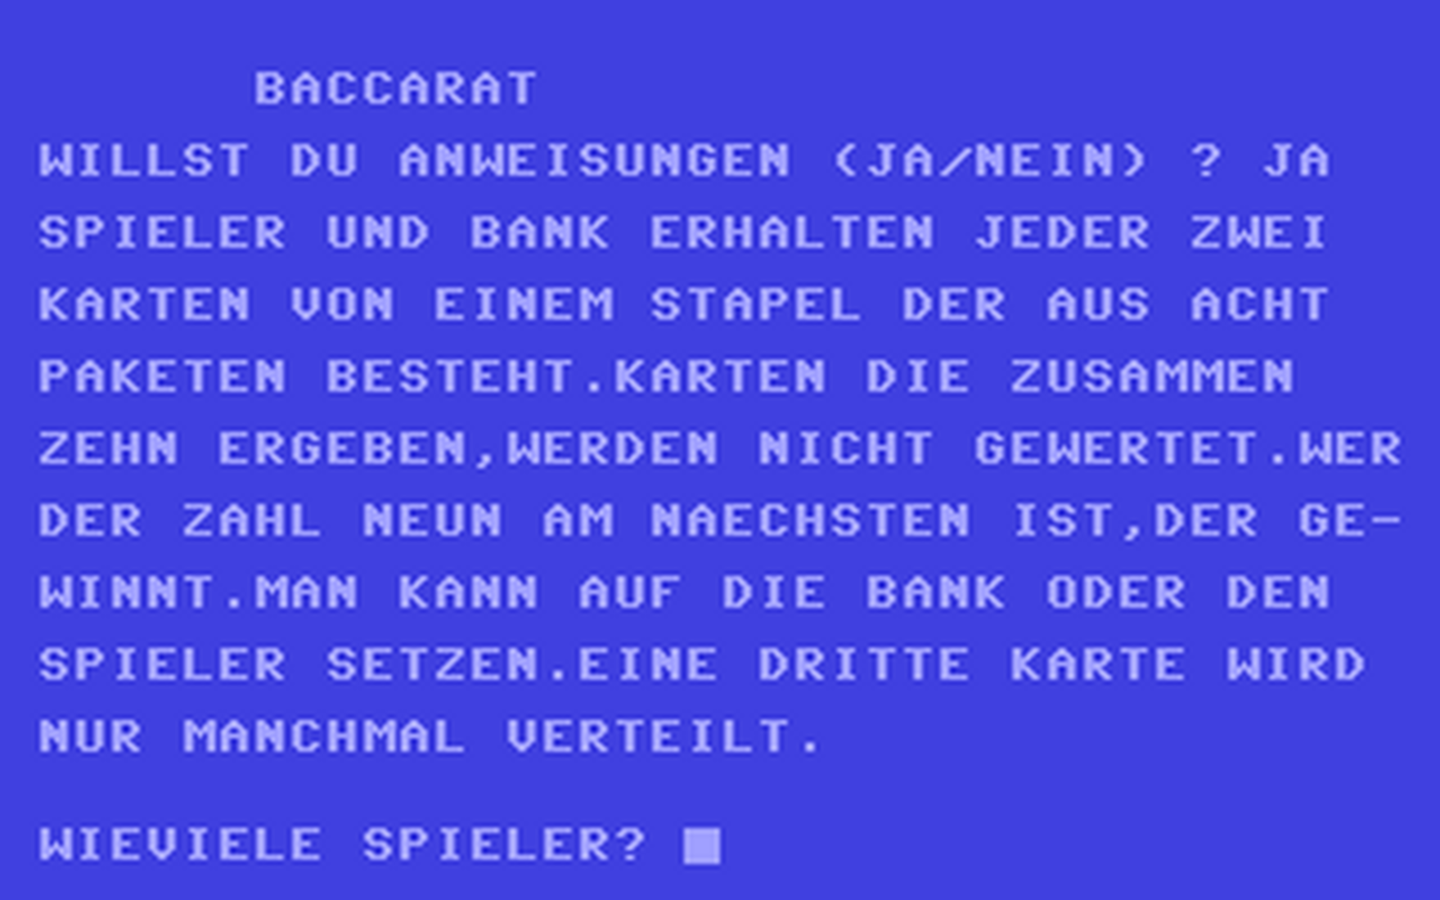 C64 GameBase Baccarat